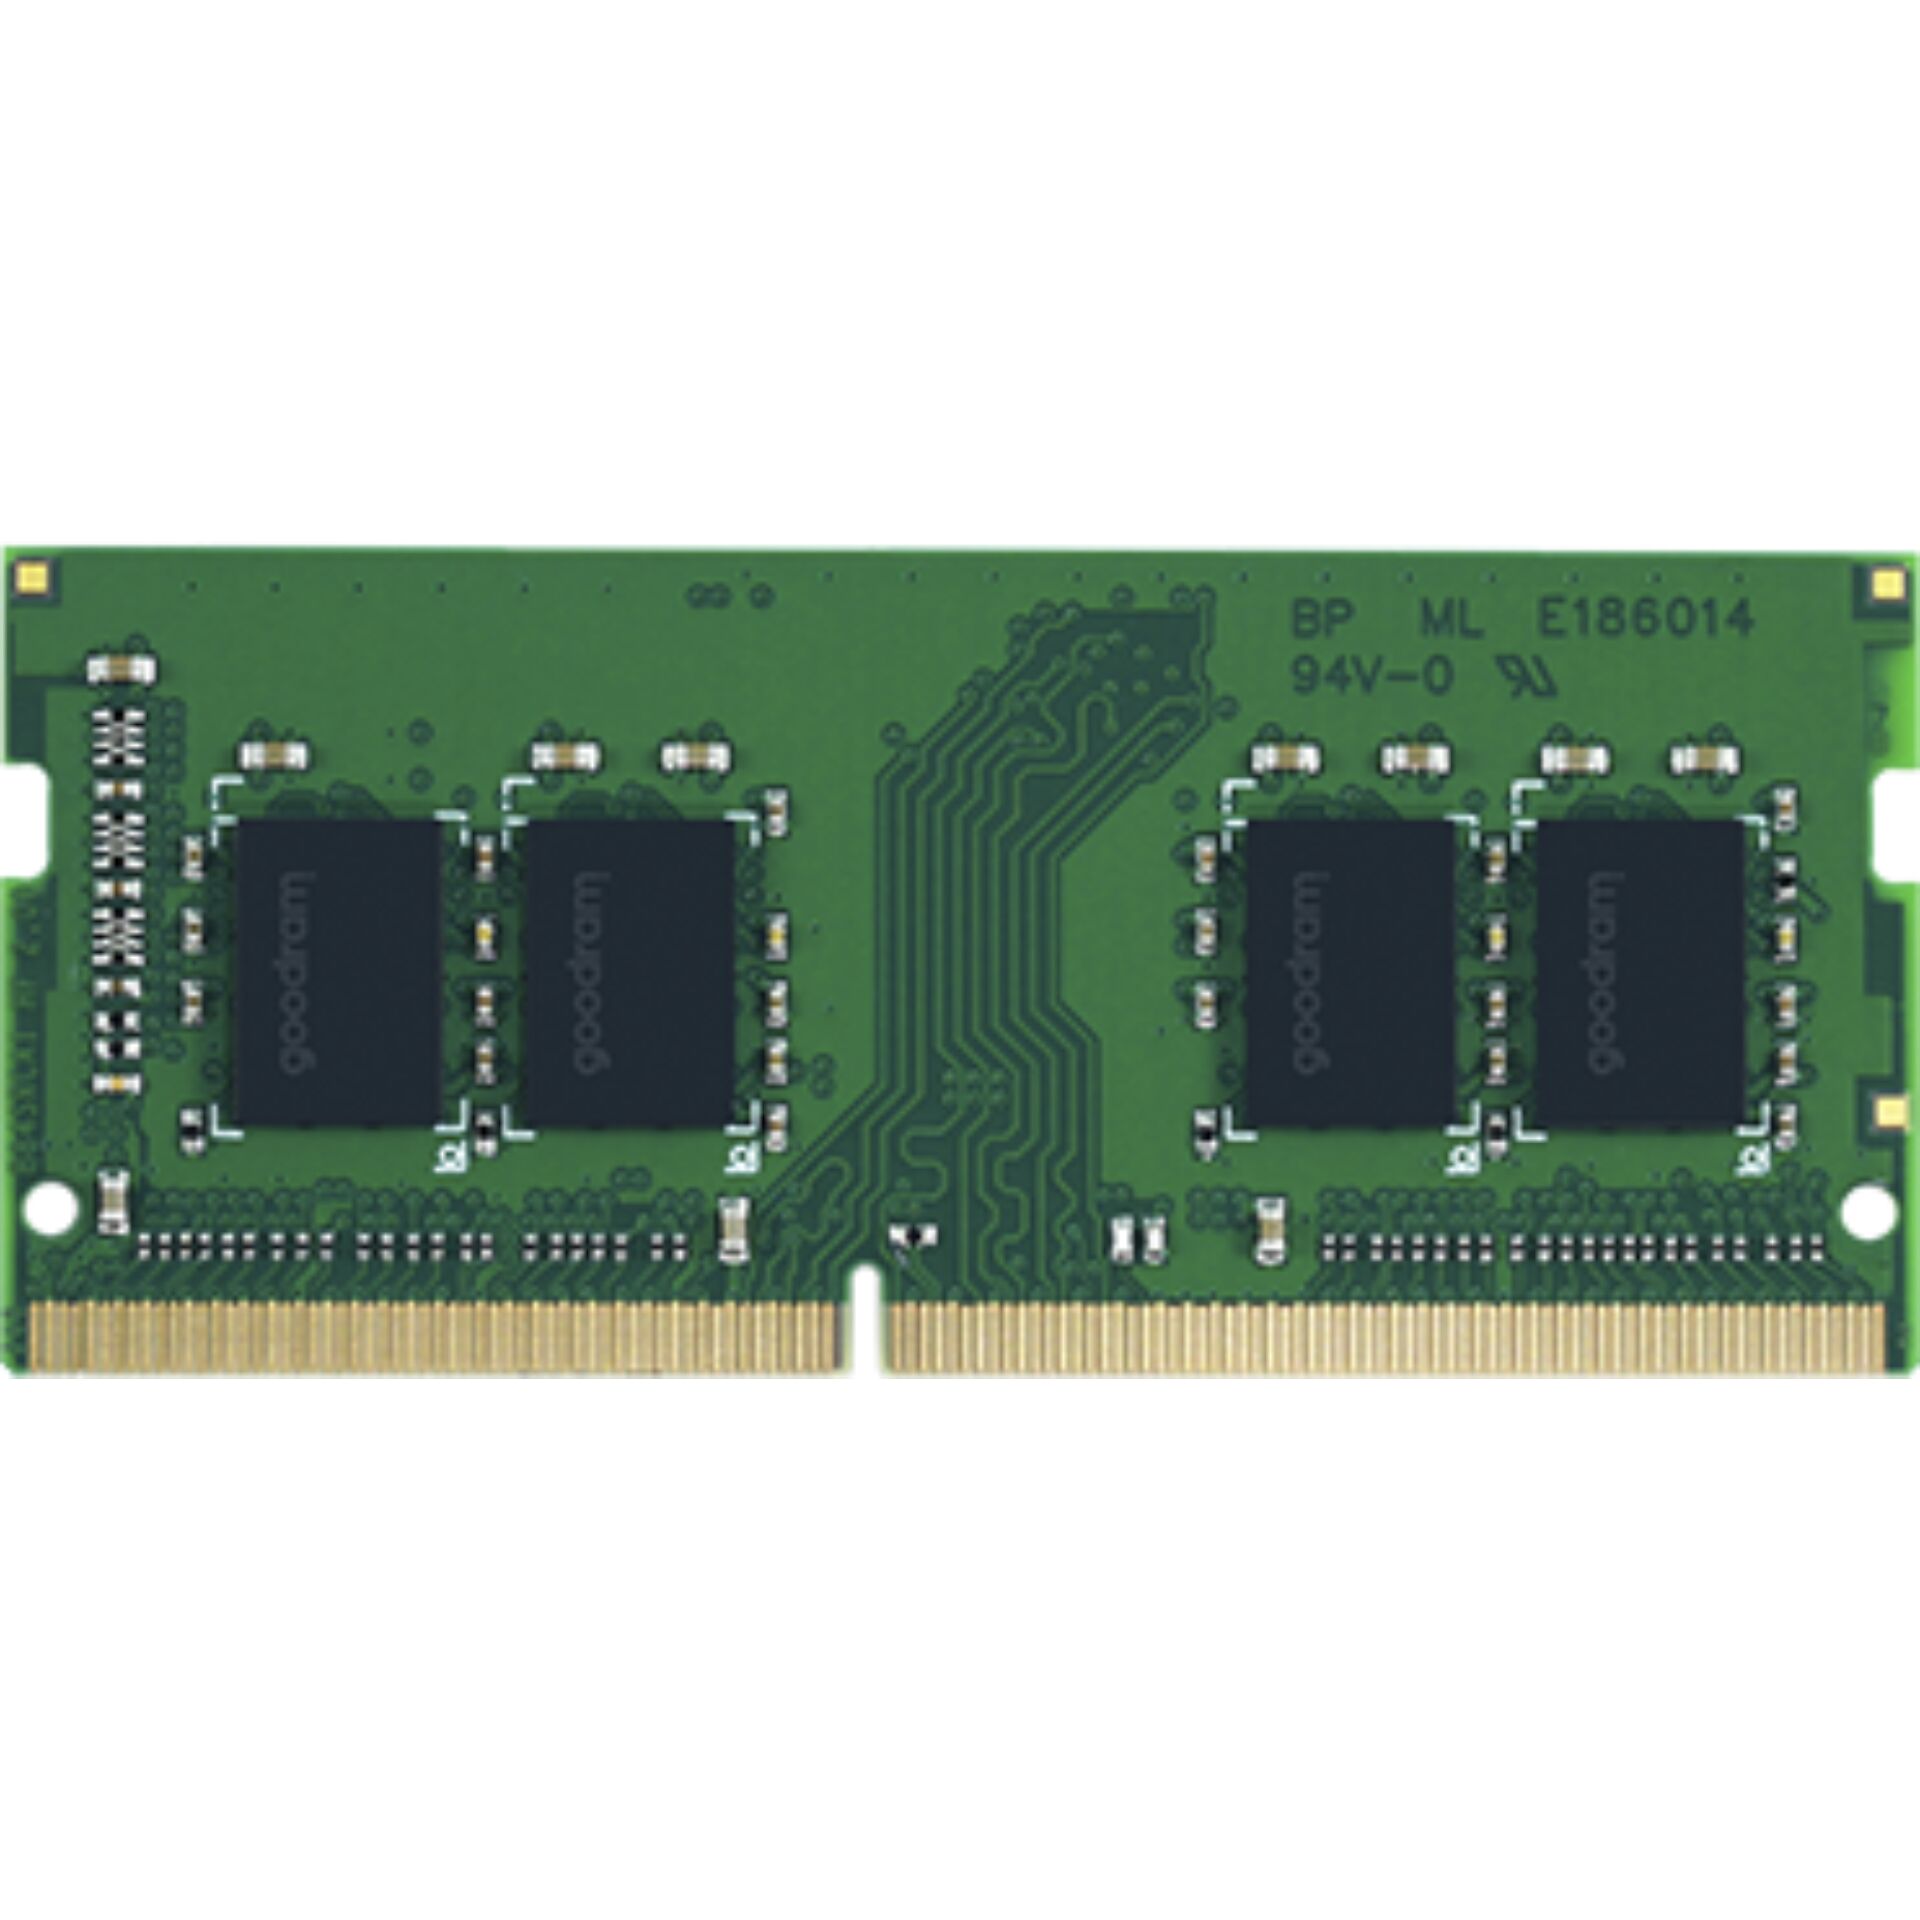 GOODRAM DDR4 3200 MT/s      16GB SODIMM 260pin CL22 SR